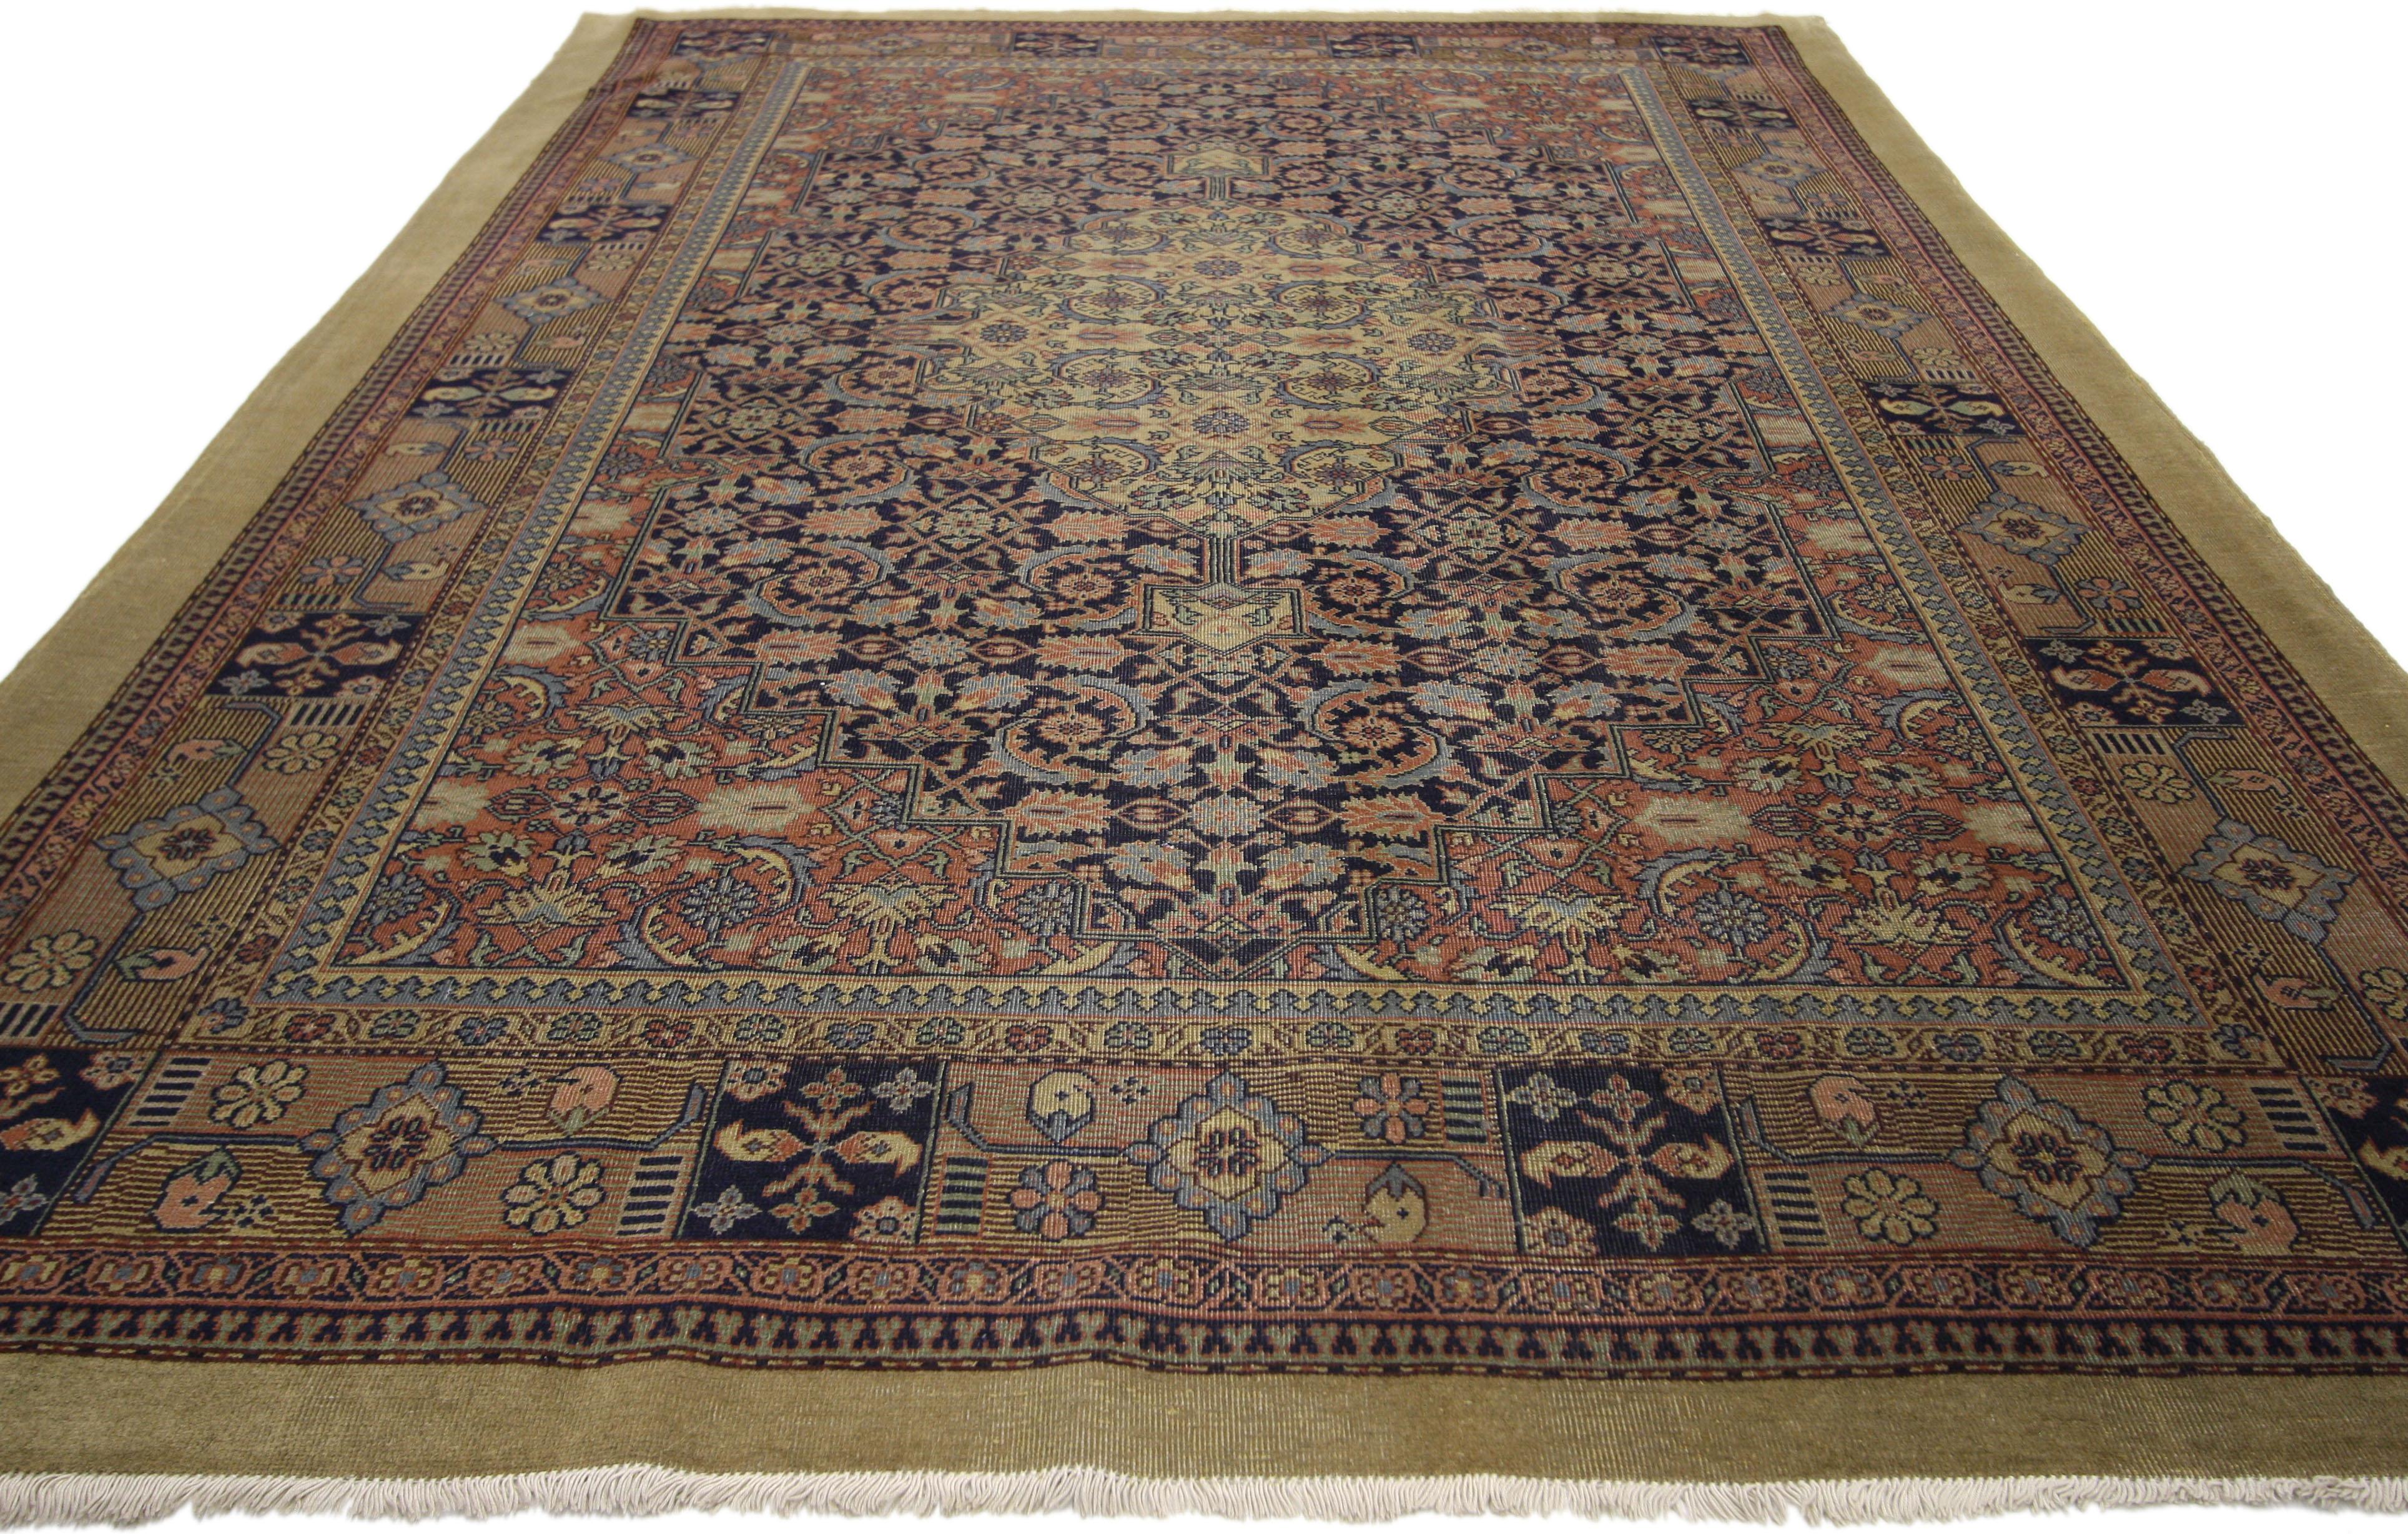 71853, Tapis de style persan Malayer en mauvais état. De superbes ornements denses remplissent le champ du tapis de ce tapis persan de style Malayer. Un treillis coloré relie le médaillon et les écoinçons, le tout s'intégrant parfaitement dans une